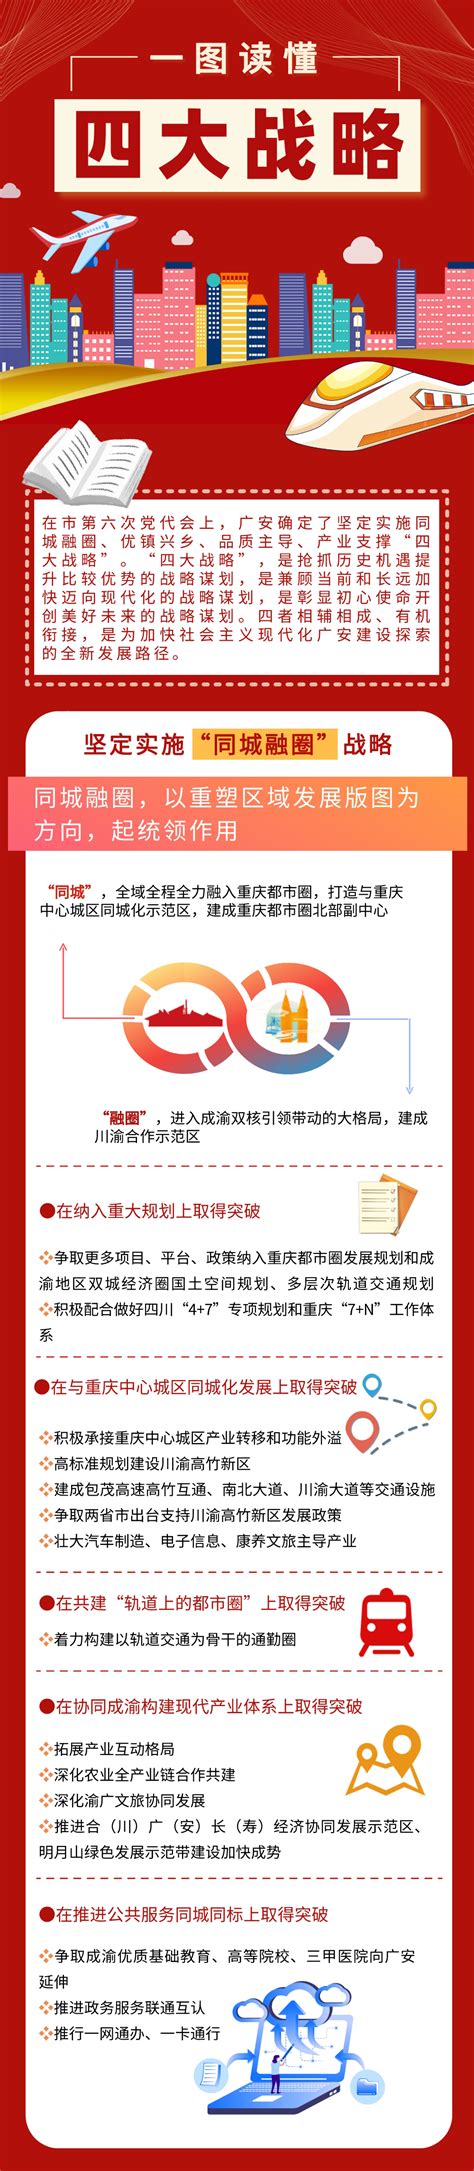 一图读懂丨“四大战略”，加快社会主义现代化广安建设的全新路径-广安市人民政府网